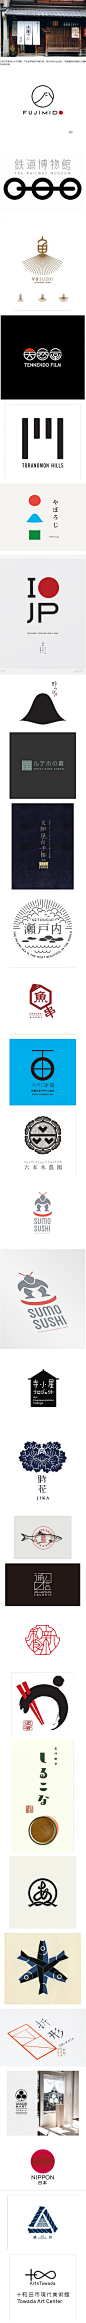 【日式美学】日本logo设计 | 视觉中国